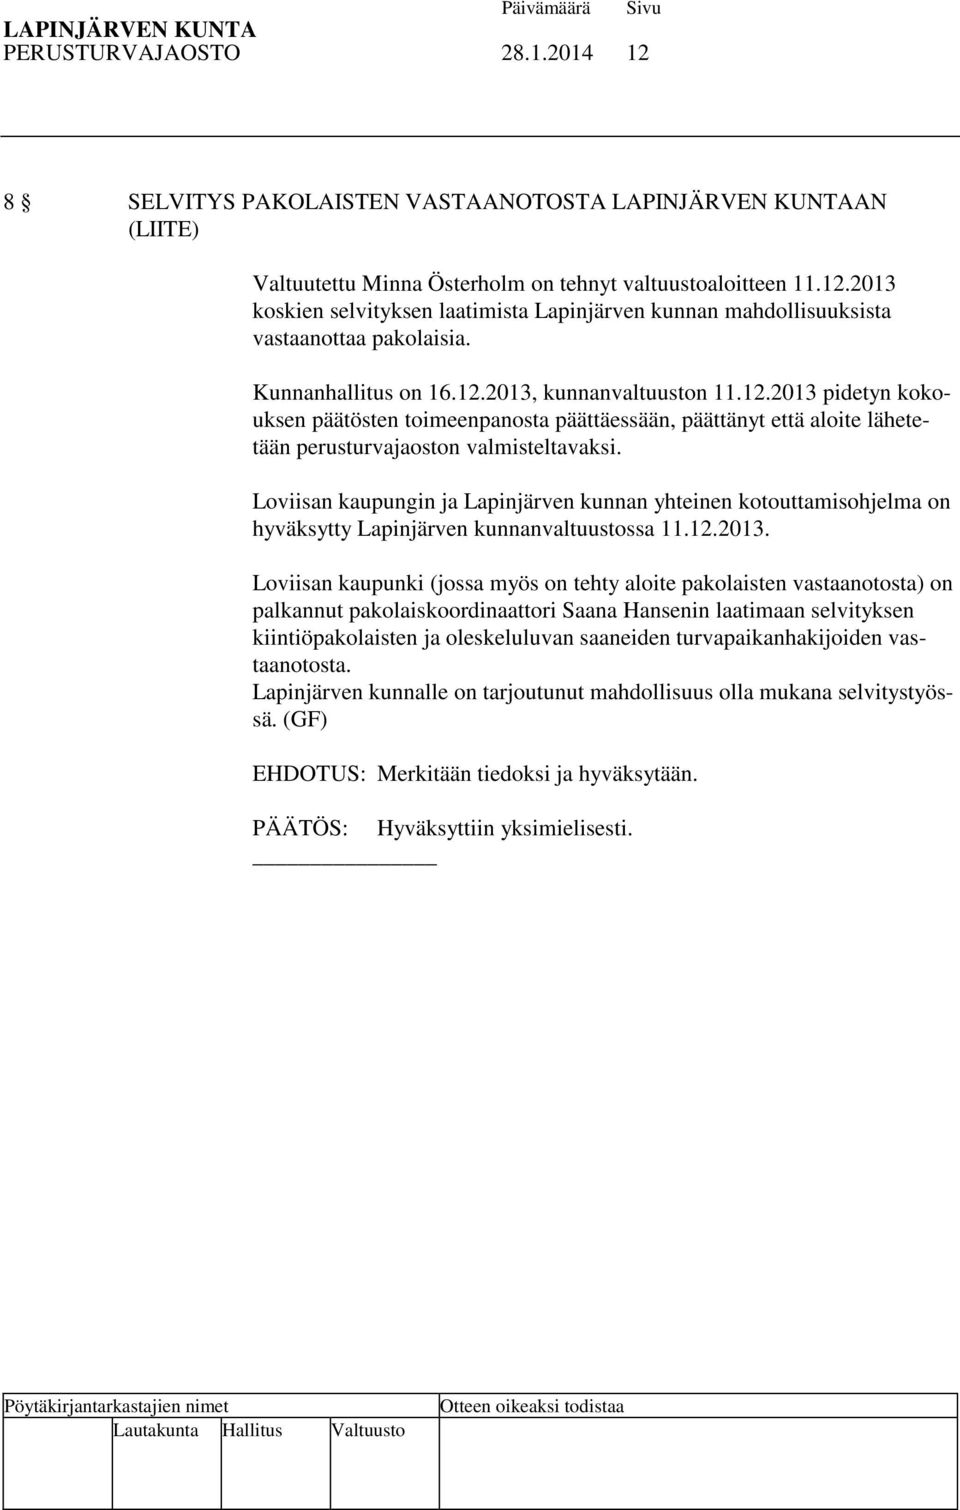 Loviisan kaupungin ja Lapinjärven kunnan yhteinen kotouttamisohjelma on hyväksytty Lapinjärven kunnanvaltuustossa 11.12.2013.